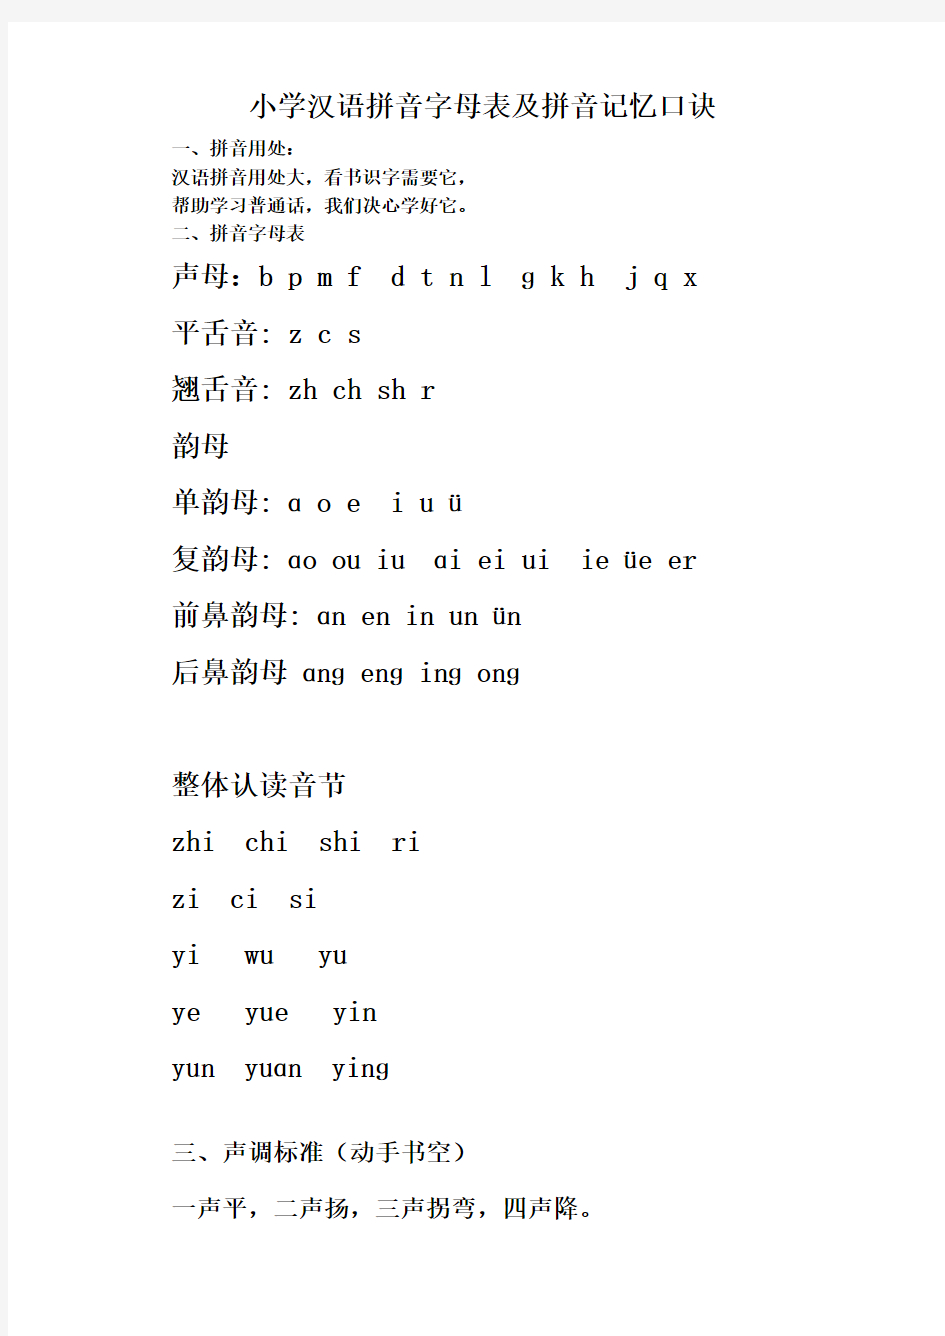 汉语拼音字母书写格式及记忆口诀